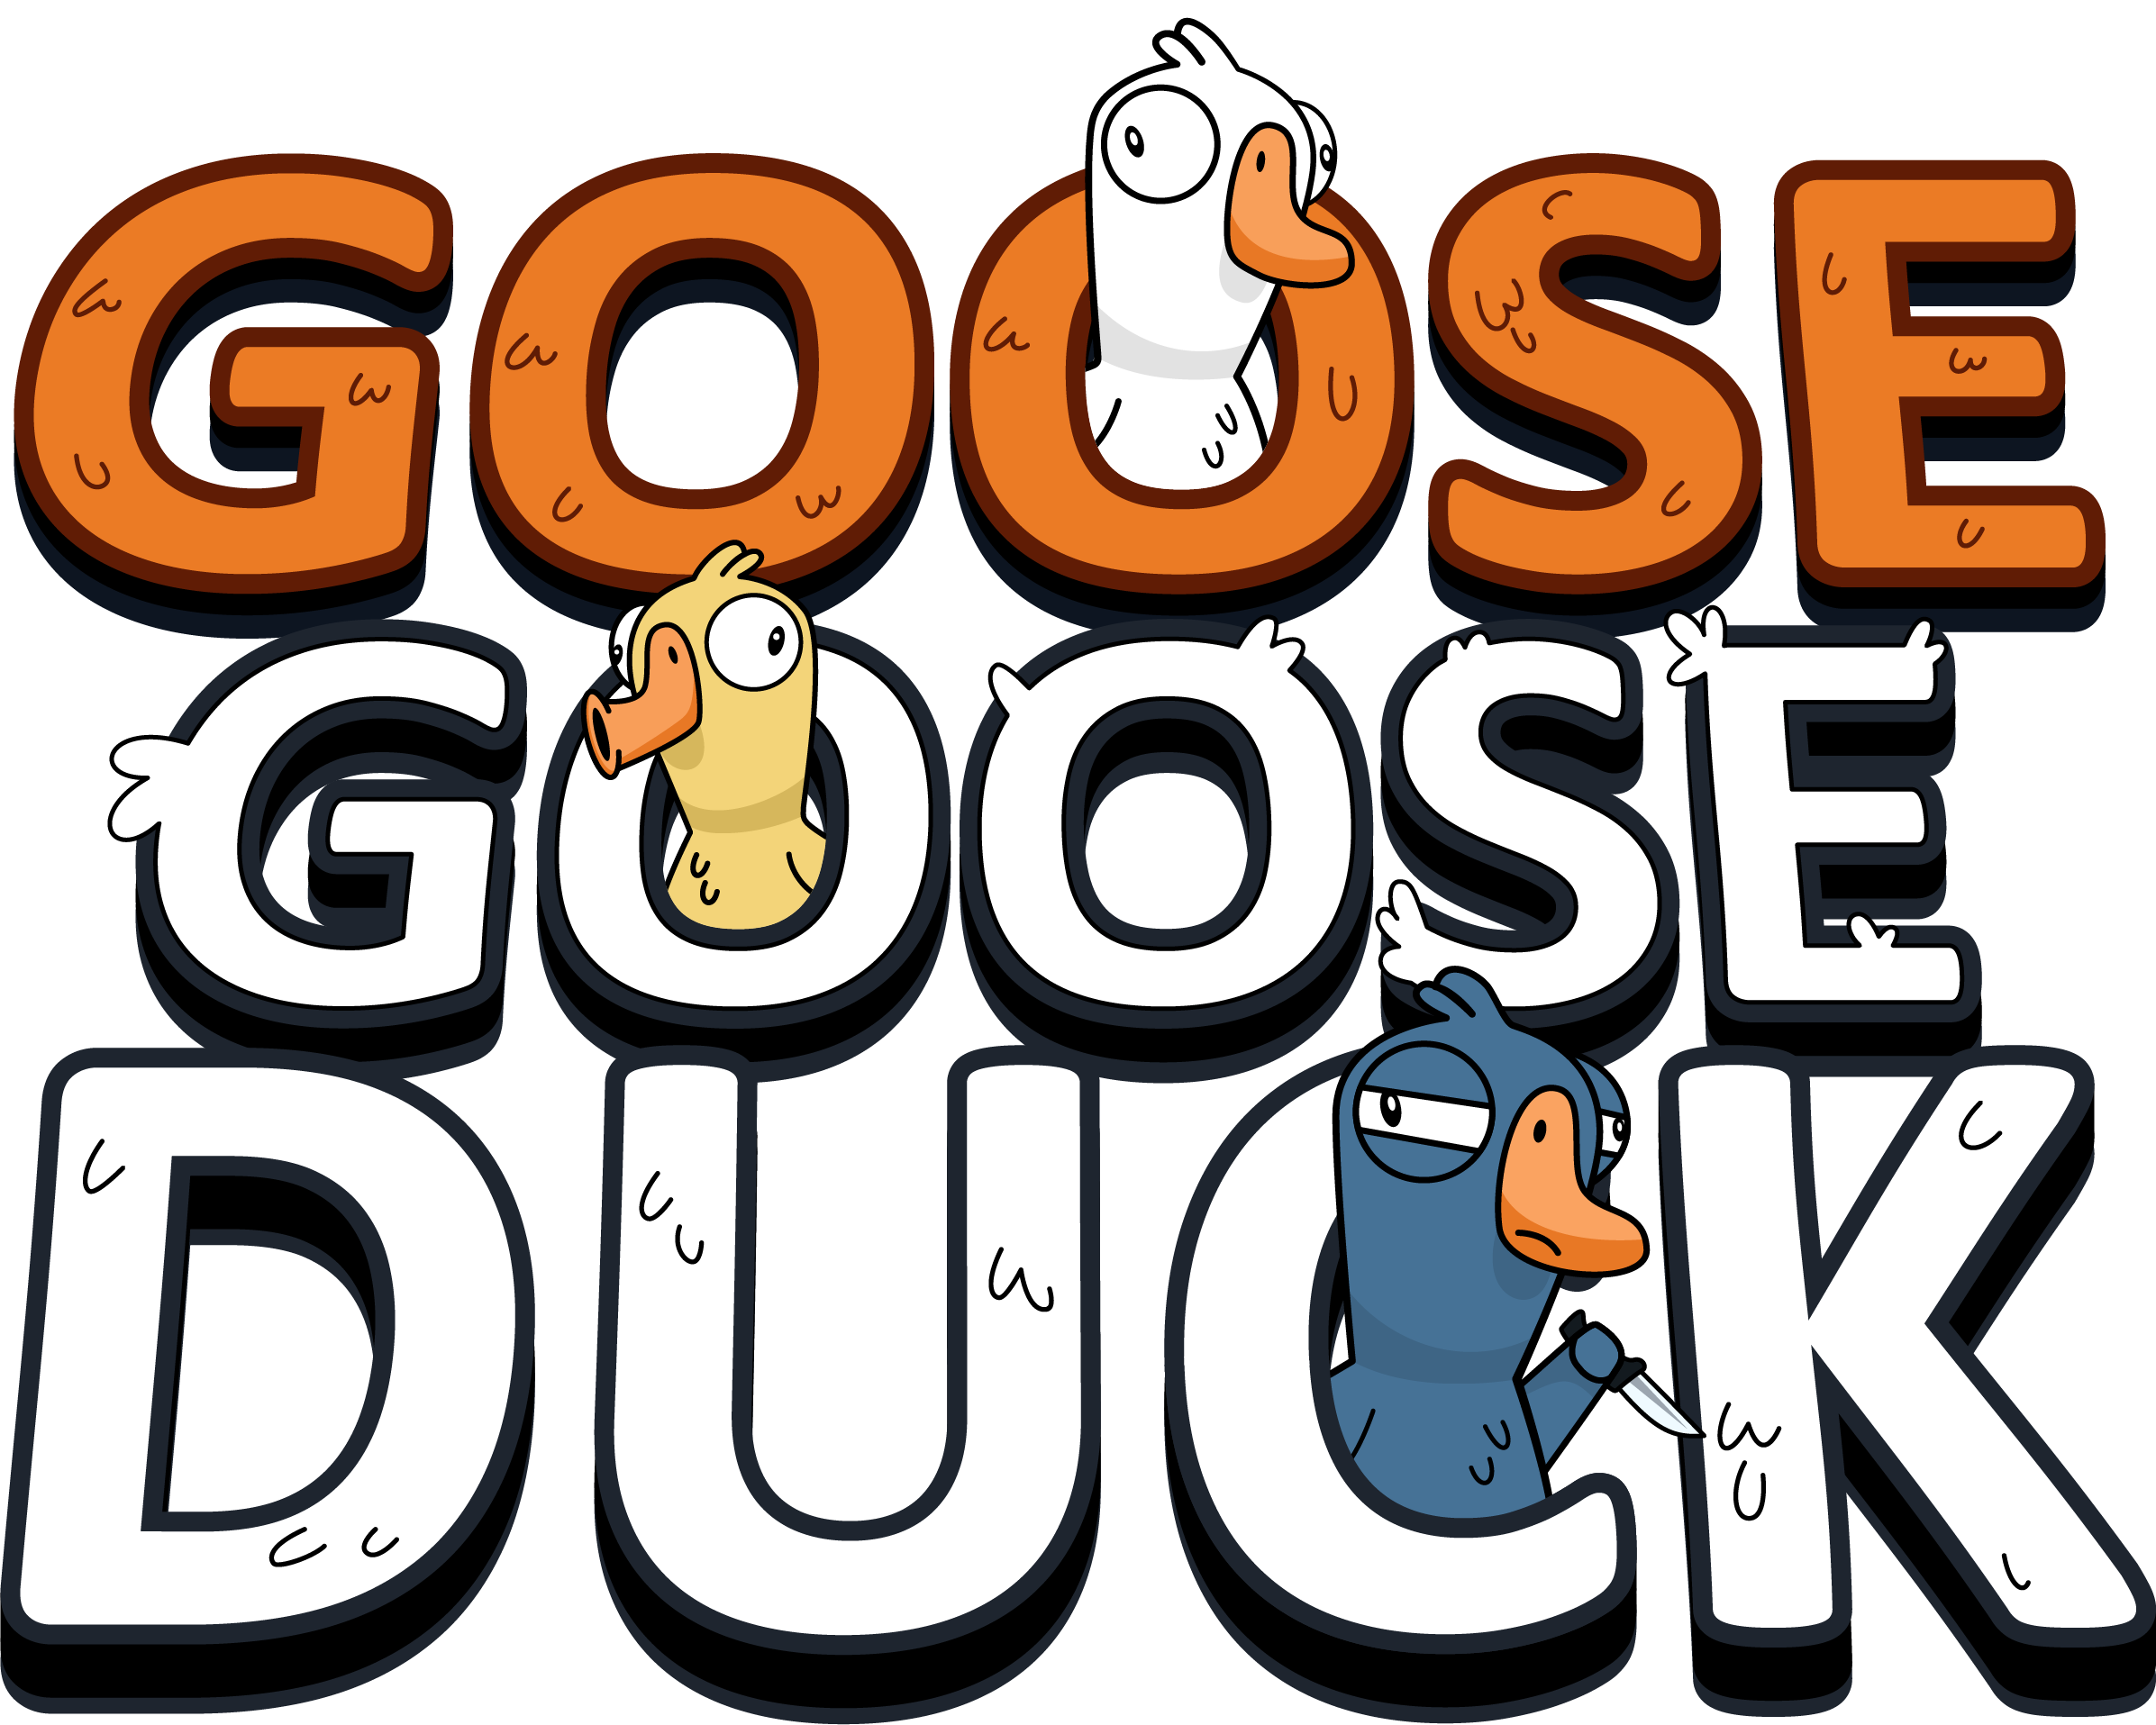 Cupcakke duck duck goose video